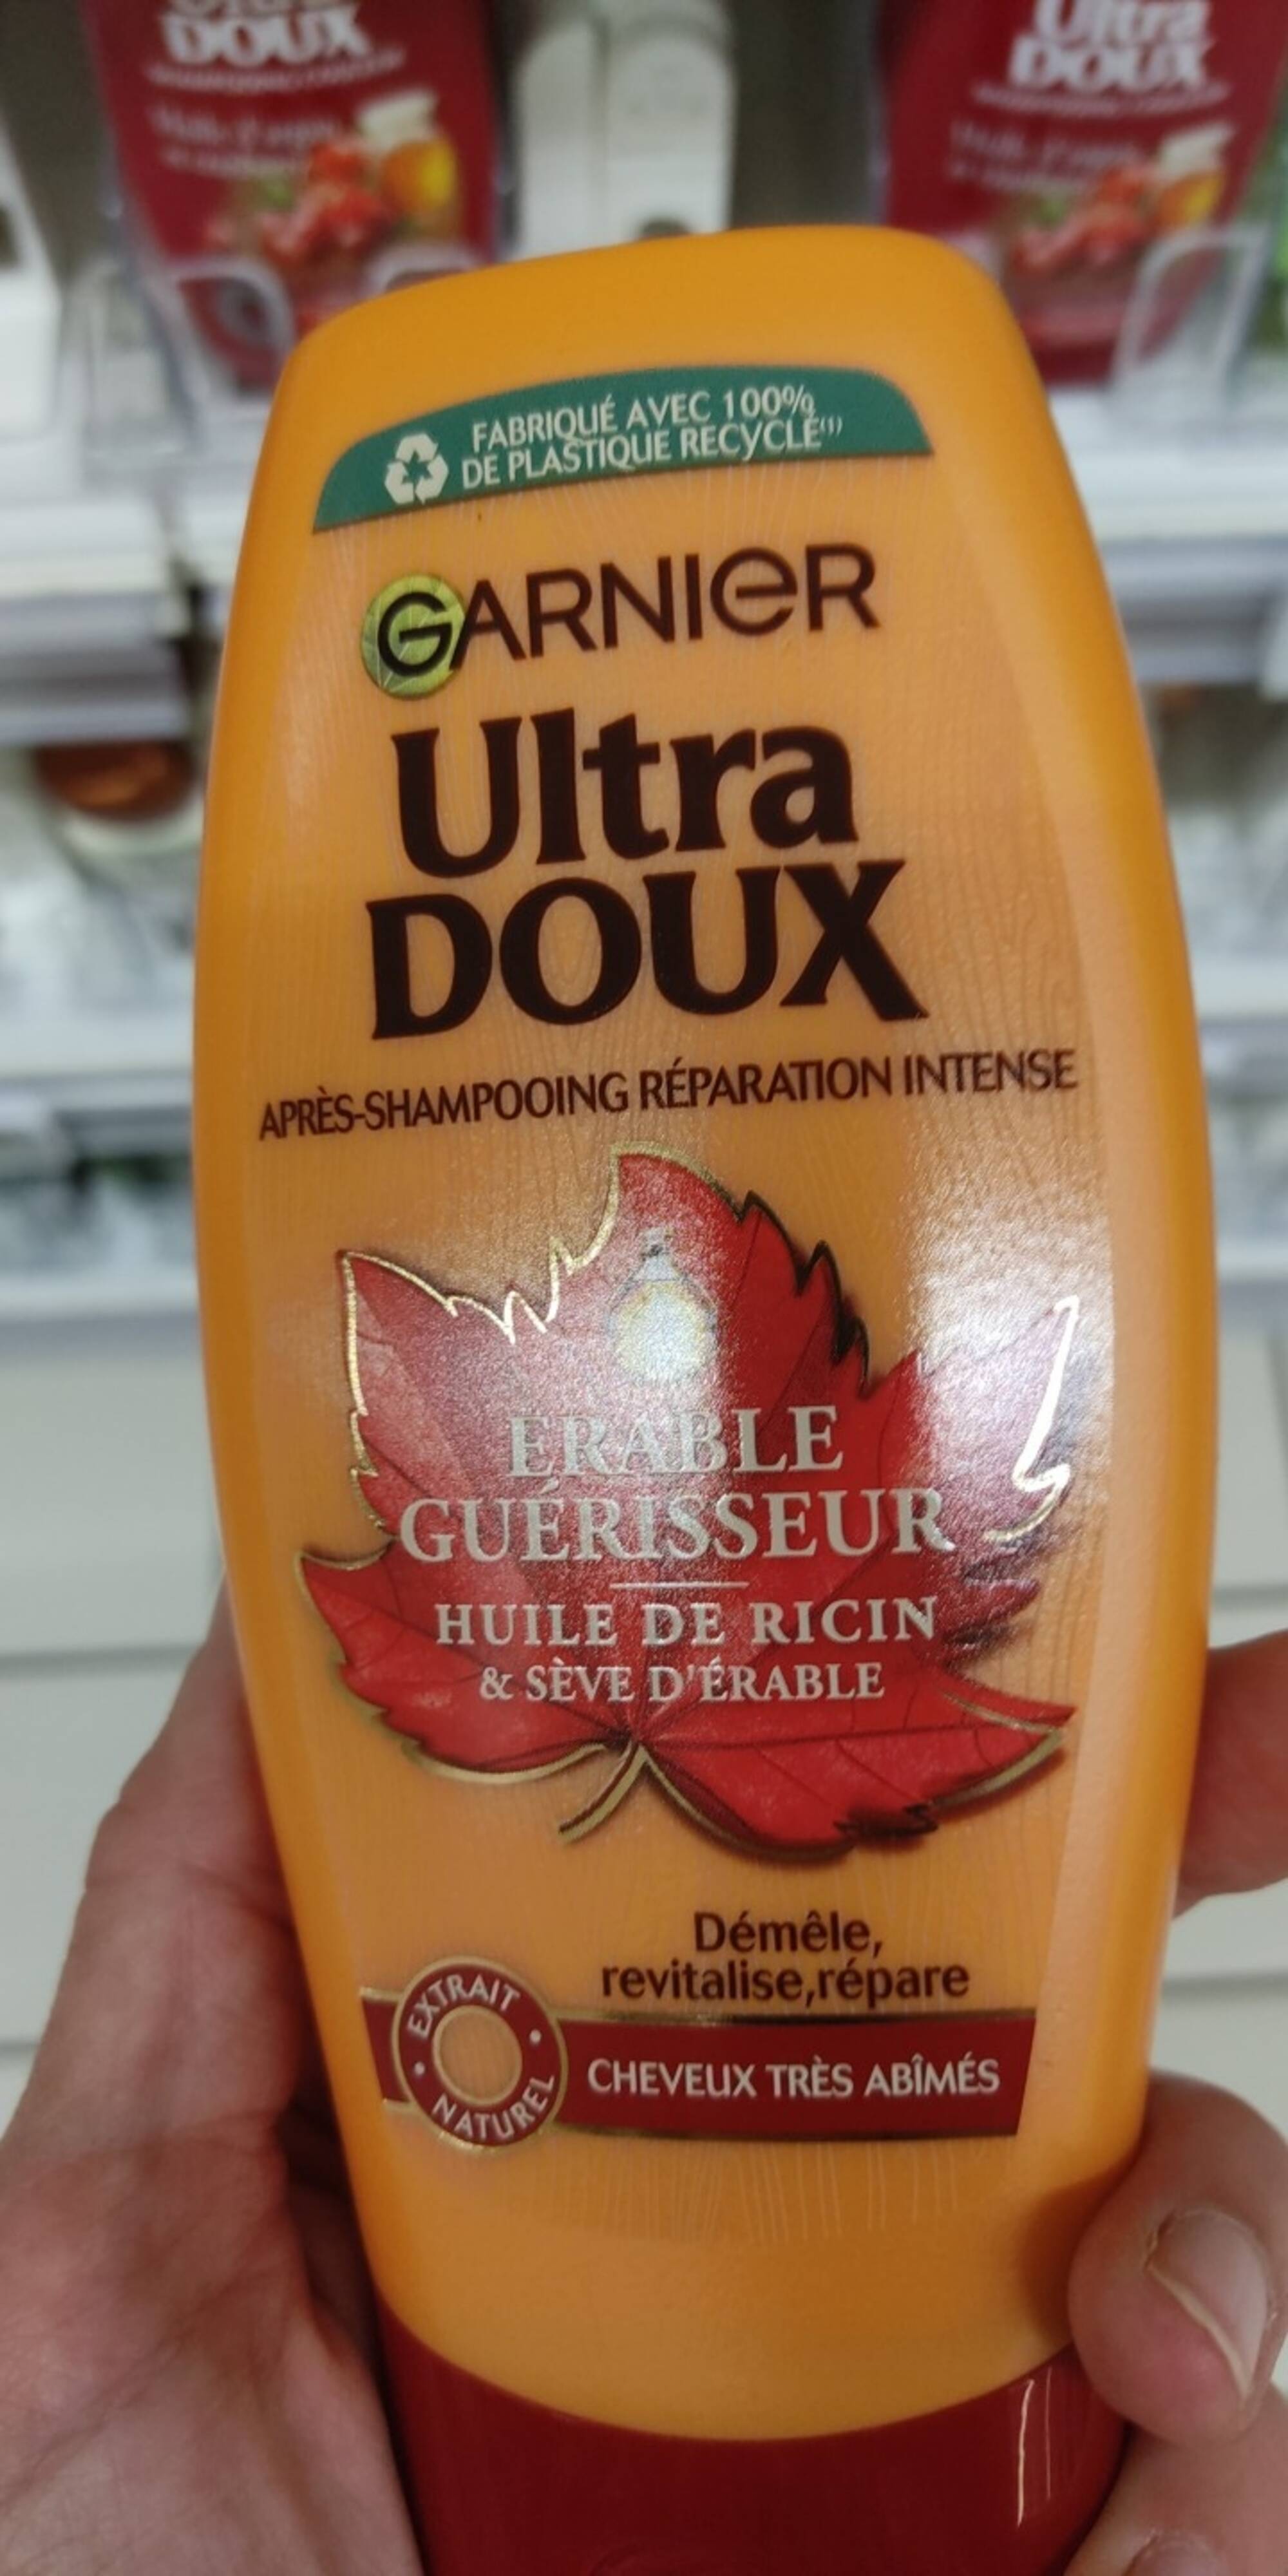 GARNIER - Ultra doux Erable Guérisseur - Après-shampooing réparation intense